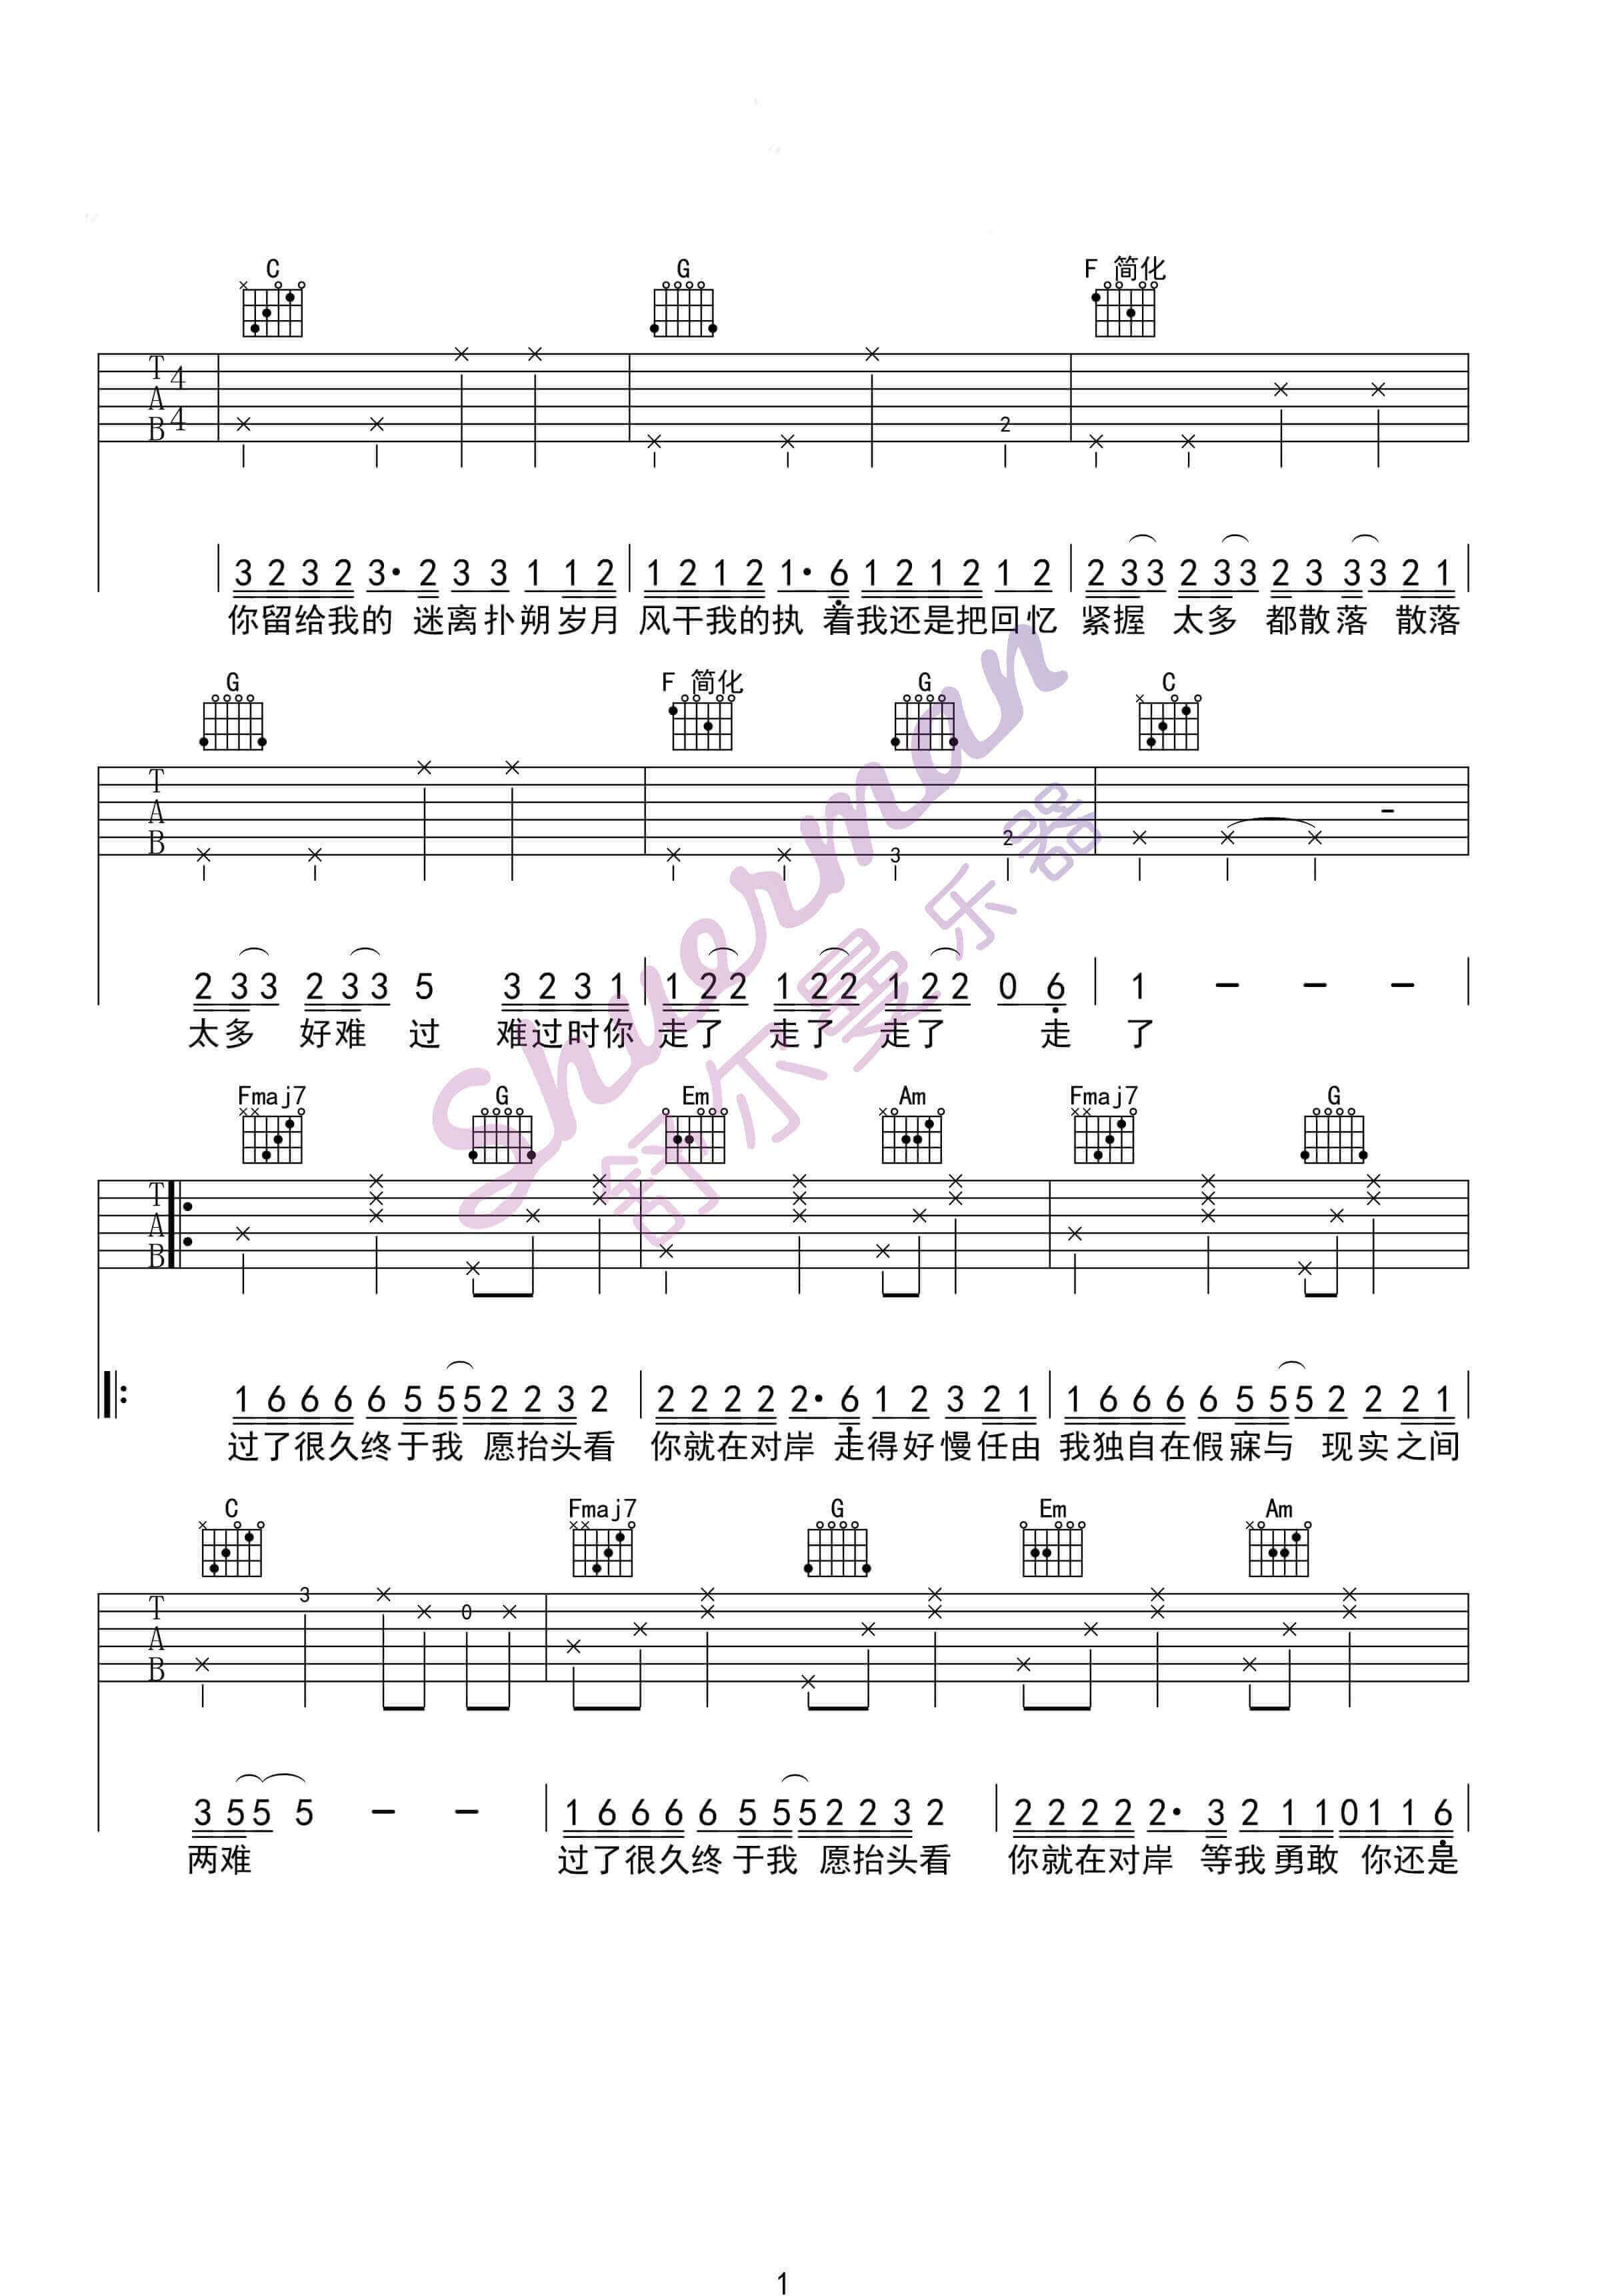 《走马》钢琴谱 - 陈粒简单版C调和弦弹唱伴奏无旋律 - 加歌词 - 钢琴简谱